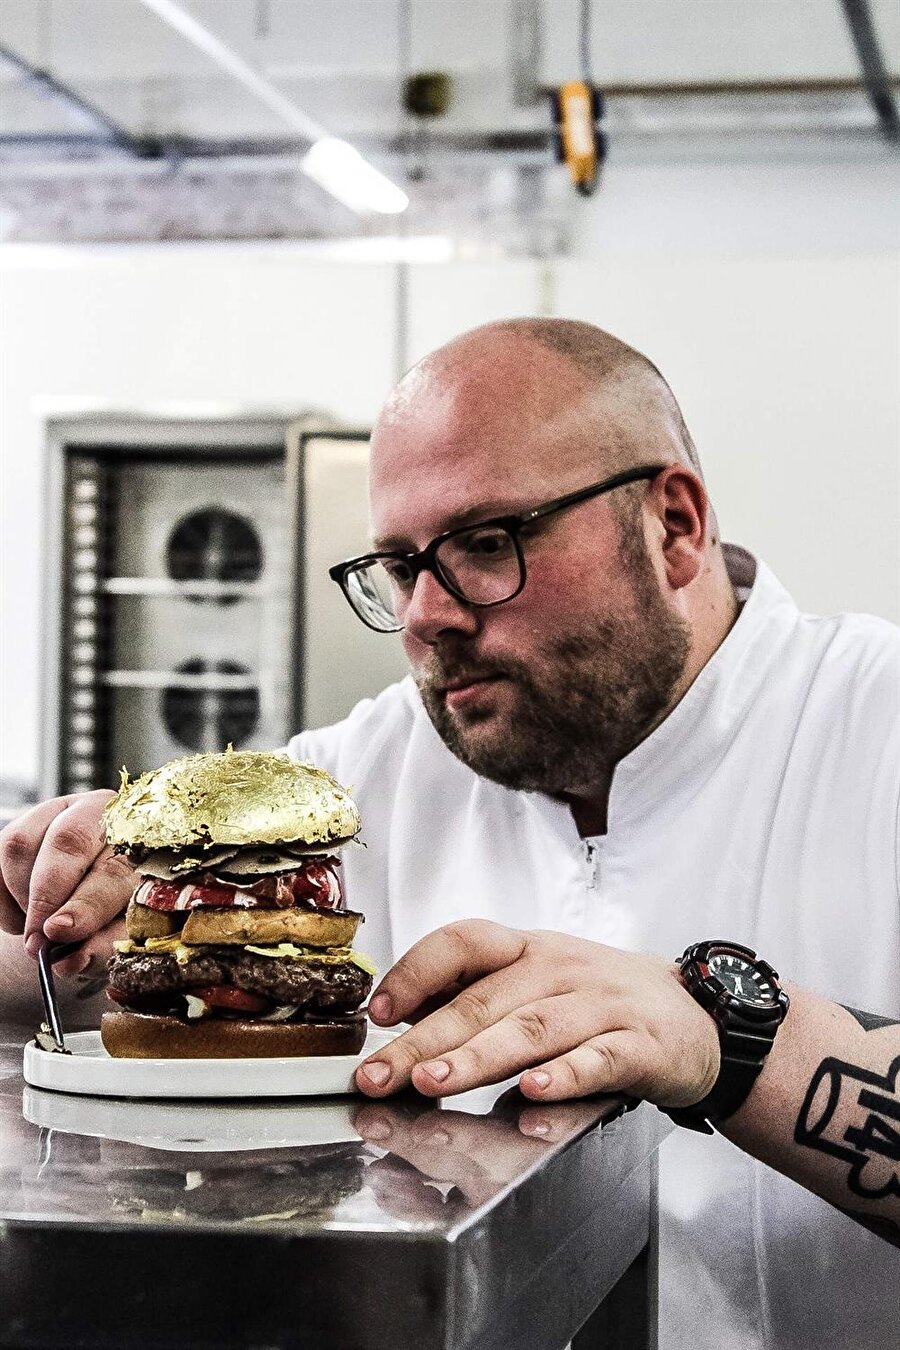 Diego Buik'in hazırladığı hamburger Guinness Rekorlar Kitabı'na "Dünyanın en pahalı hamburgeri" olarak girdi.